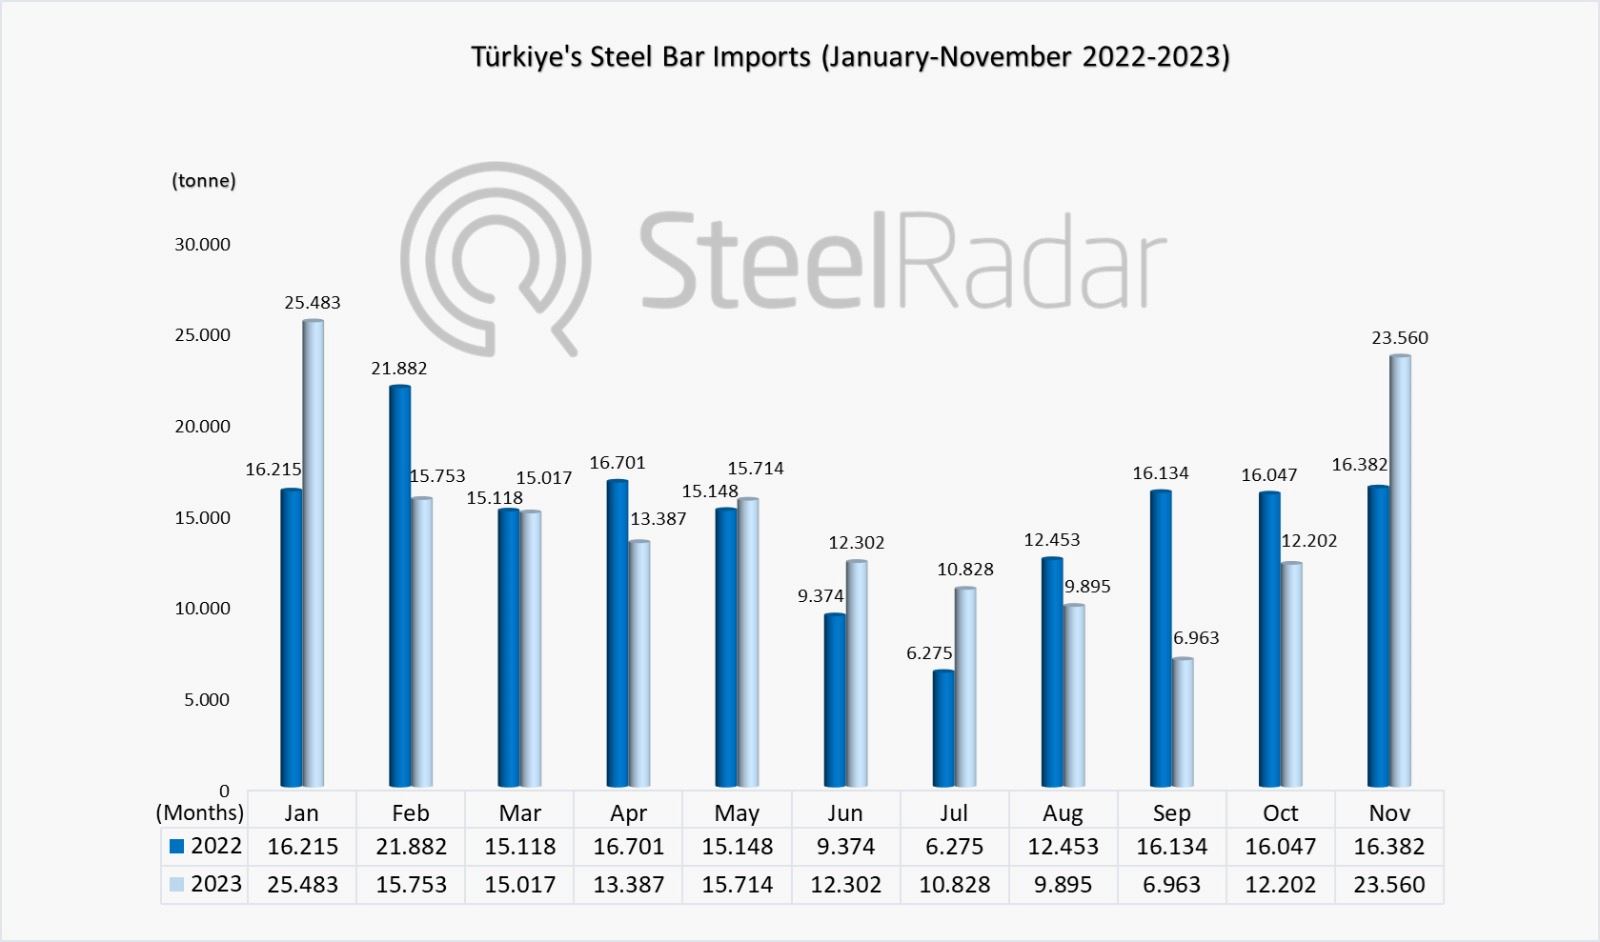 Türkiye's steel bar imports increased by 43.21% in November